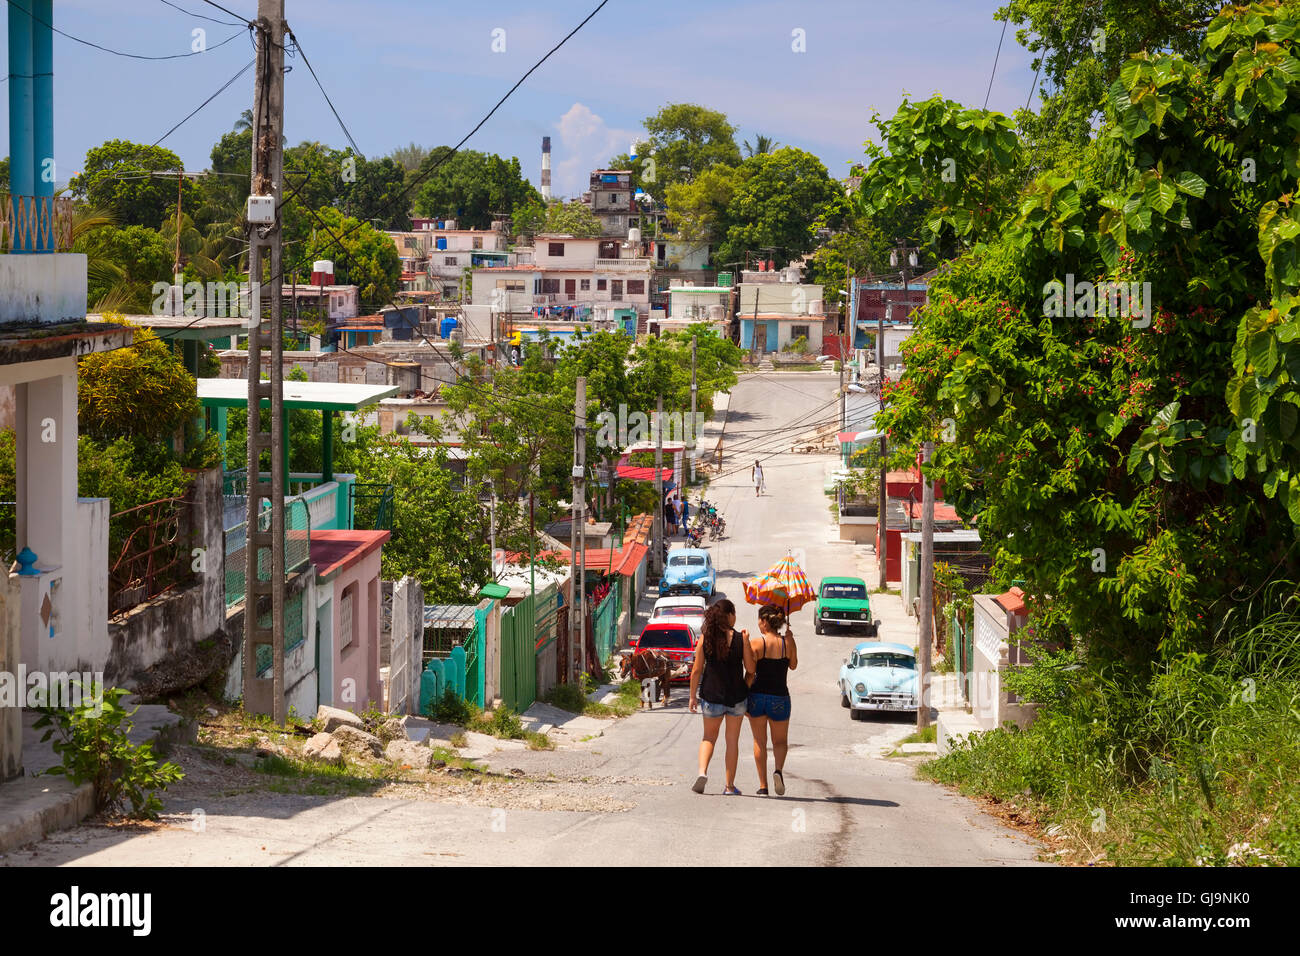 La vida cotidiana mirando hacia abajo una calle en el municipio de Guanabacoa, Ciudad de La Habana, Cuba. Foto de stock